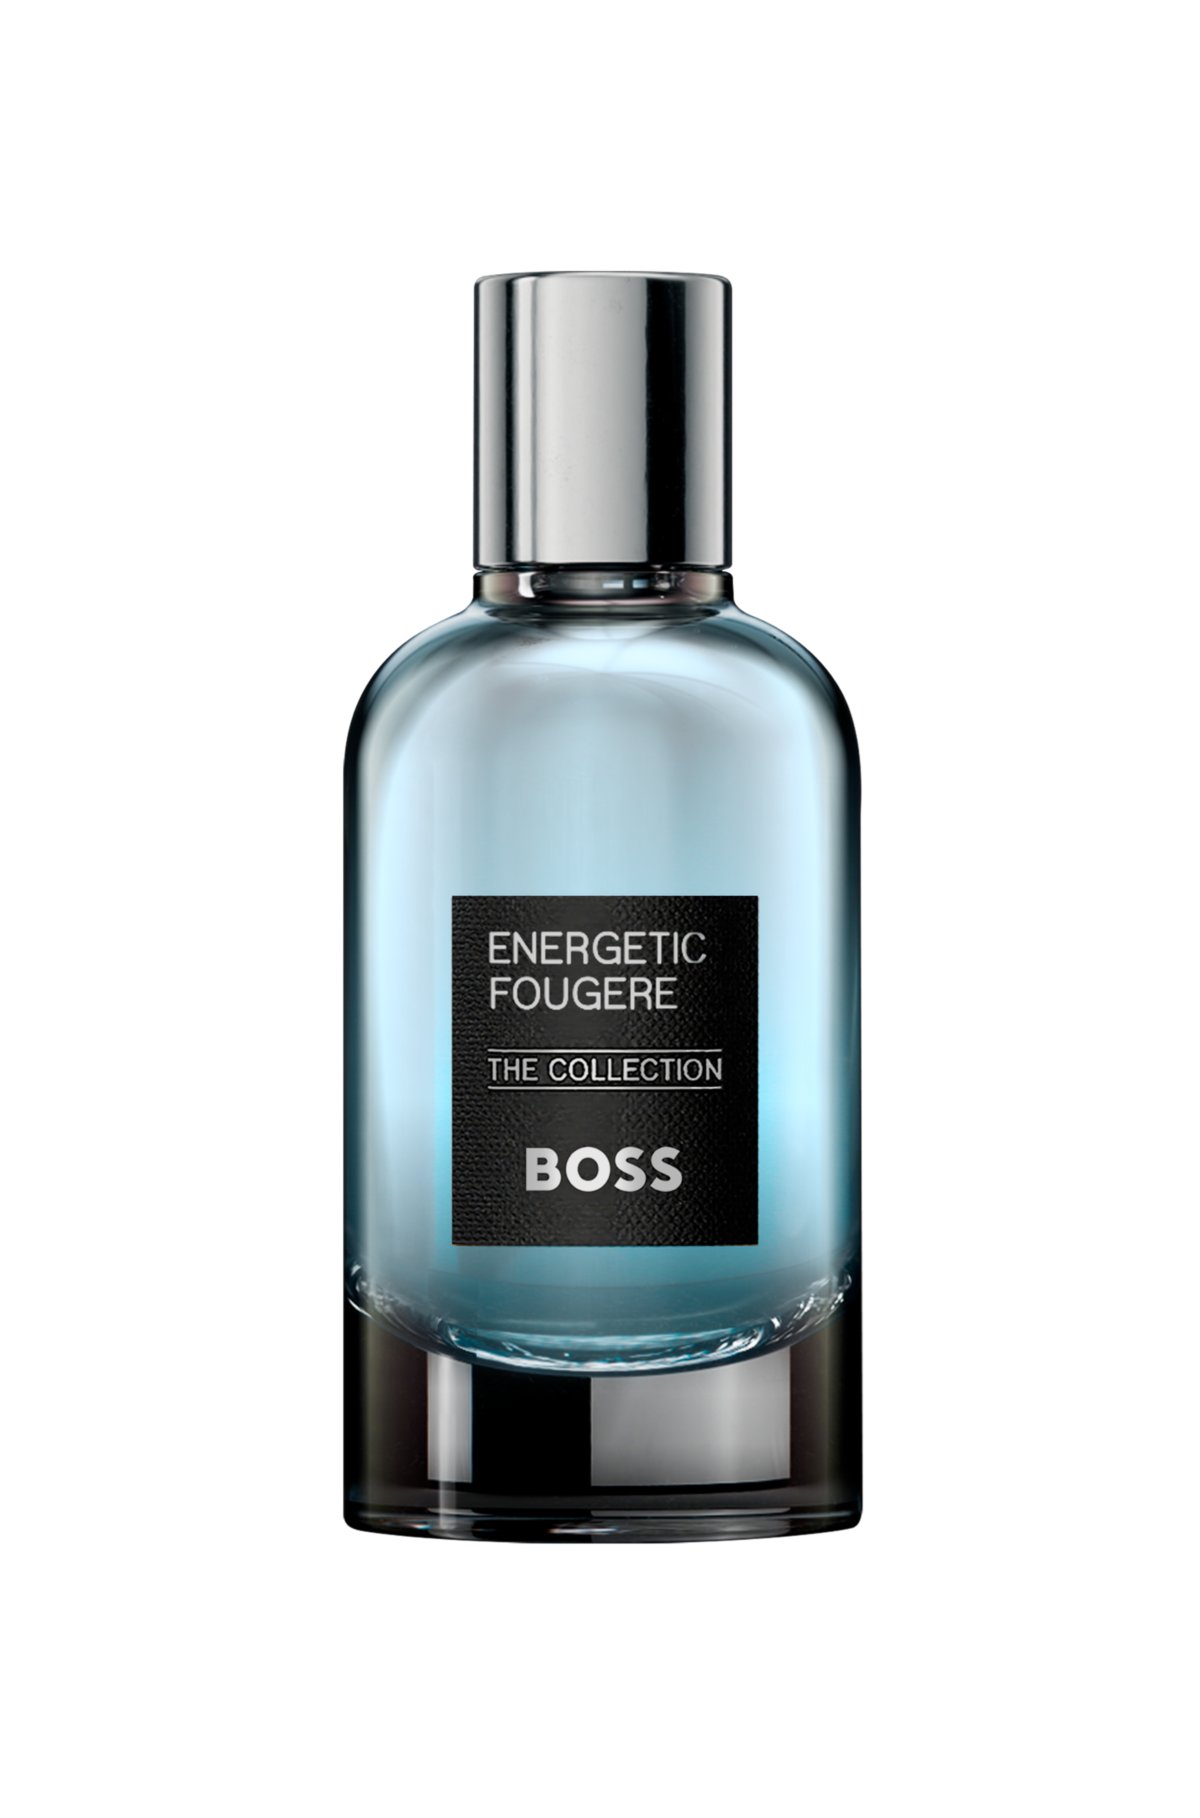 BOSS The Collection Energetic Fougère eau de parfum 100ml, Assorted-Pre-Pack